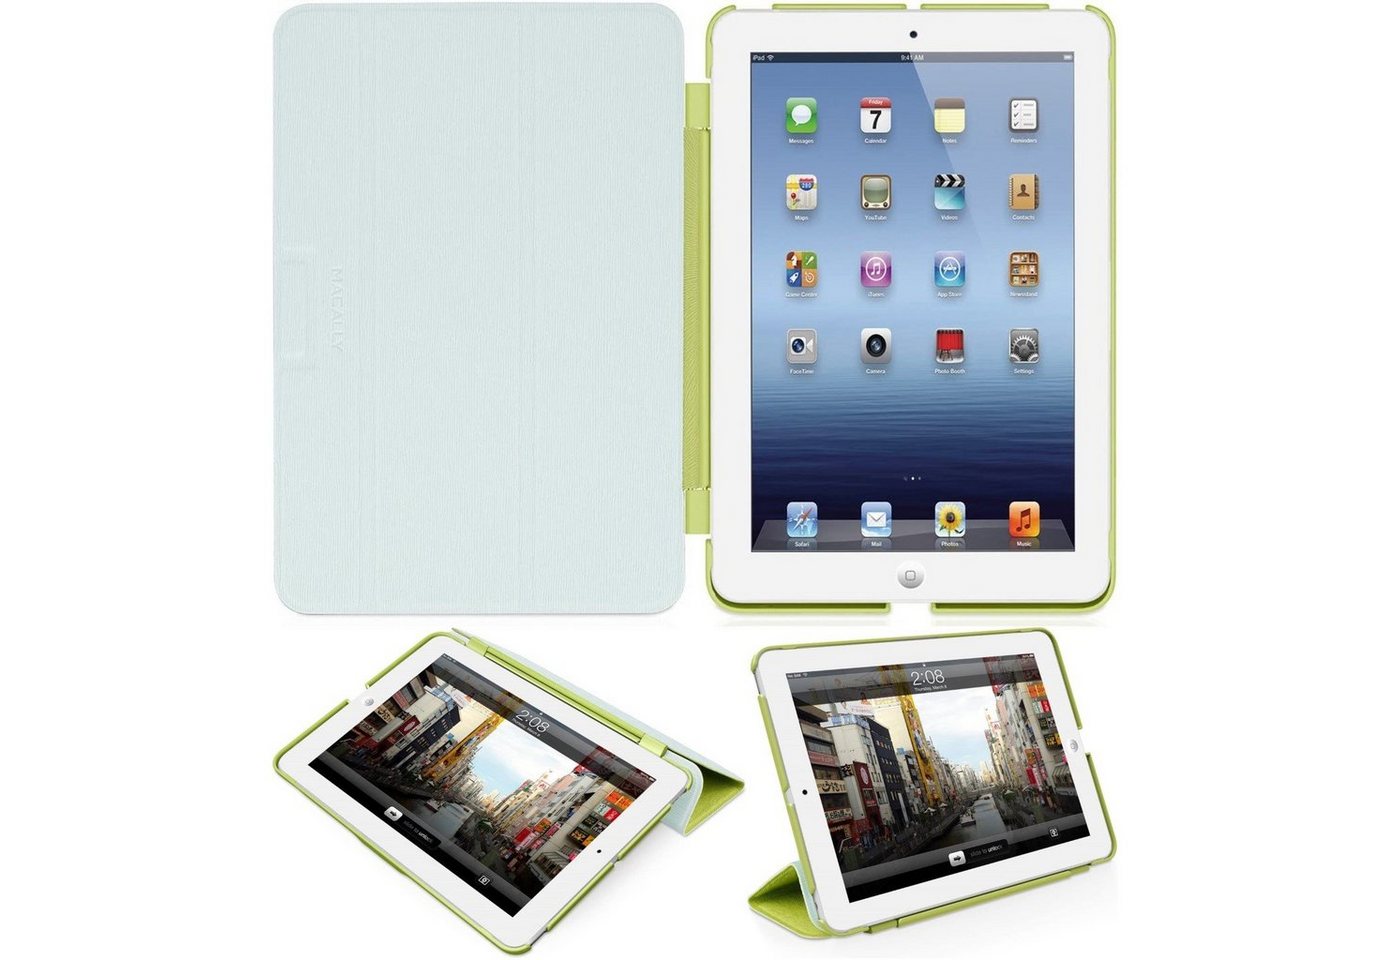 Macally Tablet-Hülle Klapp-Tasche Cover Ständer Schutz-Hülle Grün, Smart Folio für Apple iPad mini 1 2 3 Gen, Stand-Funktion, leicht von Macally